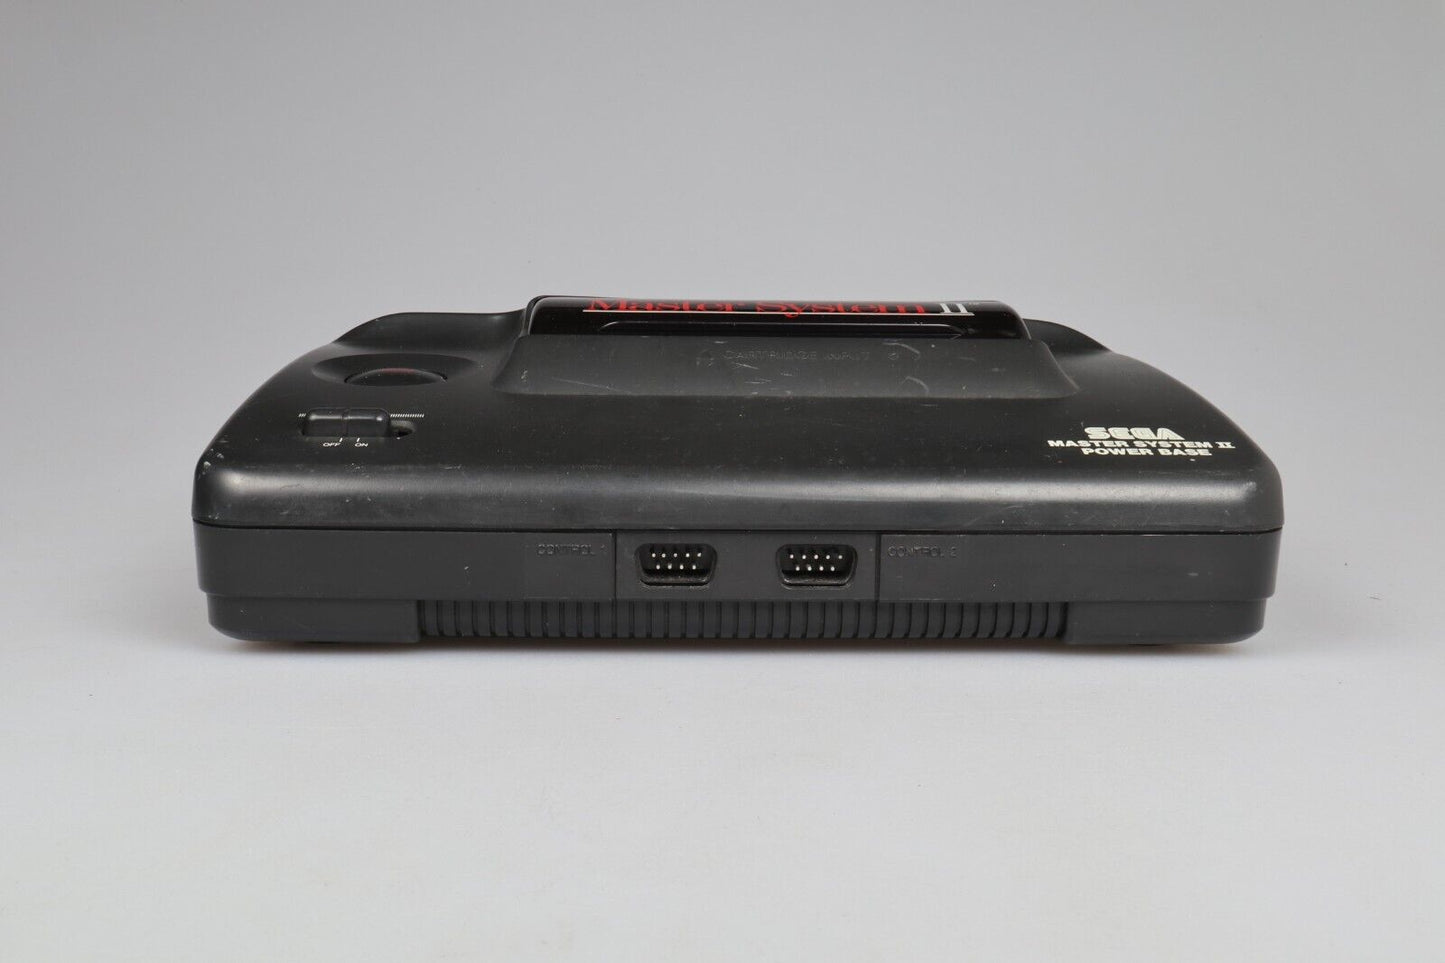 Sega Master System II | Power Base (untested)